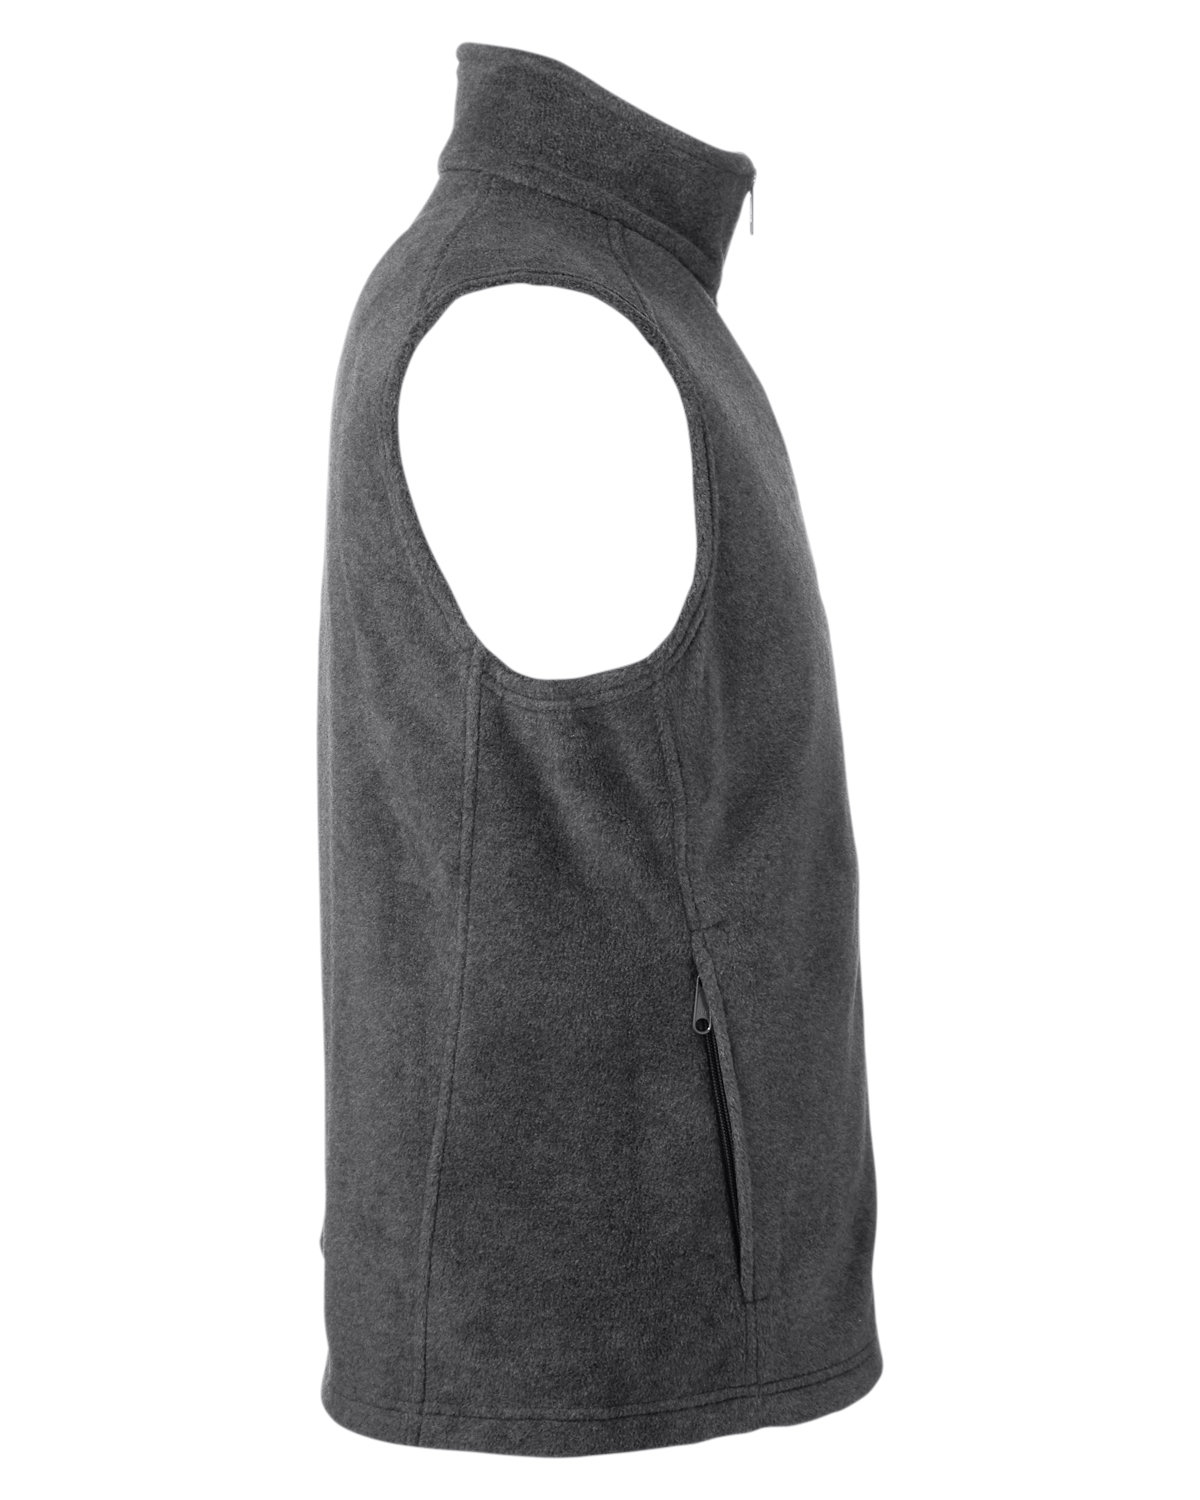 Columbia Baby Steens Mtn Fleece Vest, New Olive, 18/24 : Buy